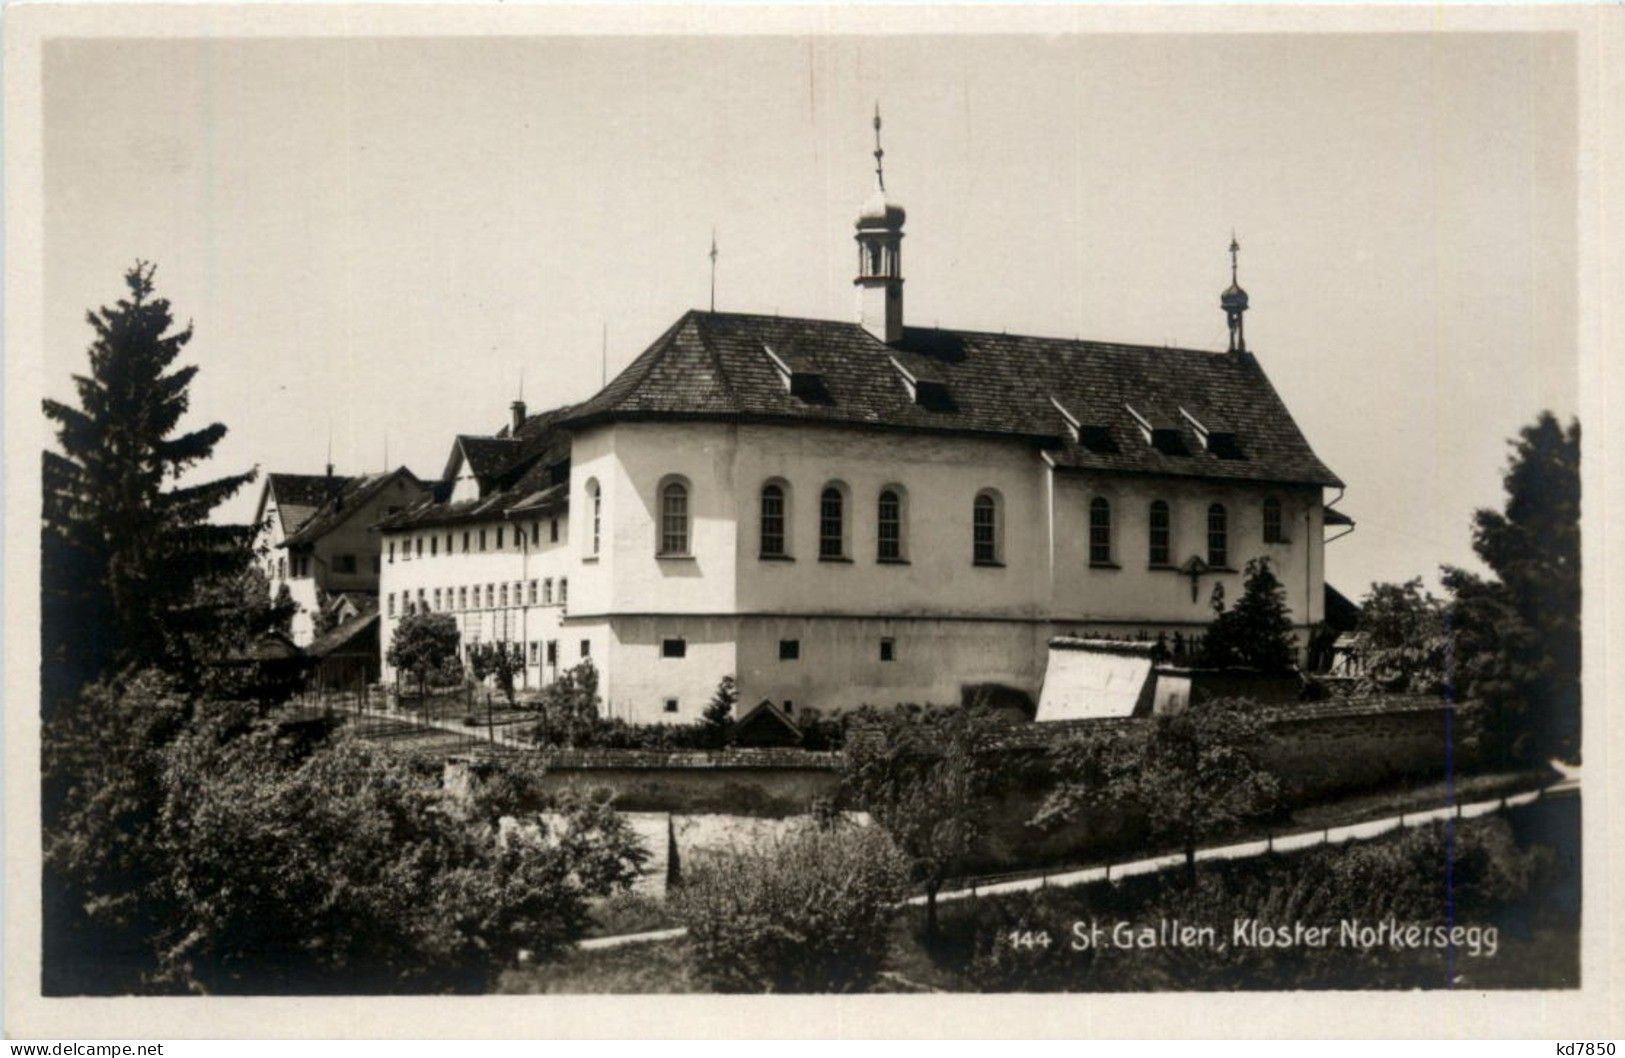 St. Gallen - Kloster Notkersegg - St. Gallen